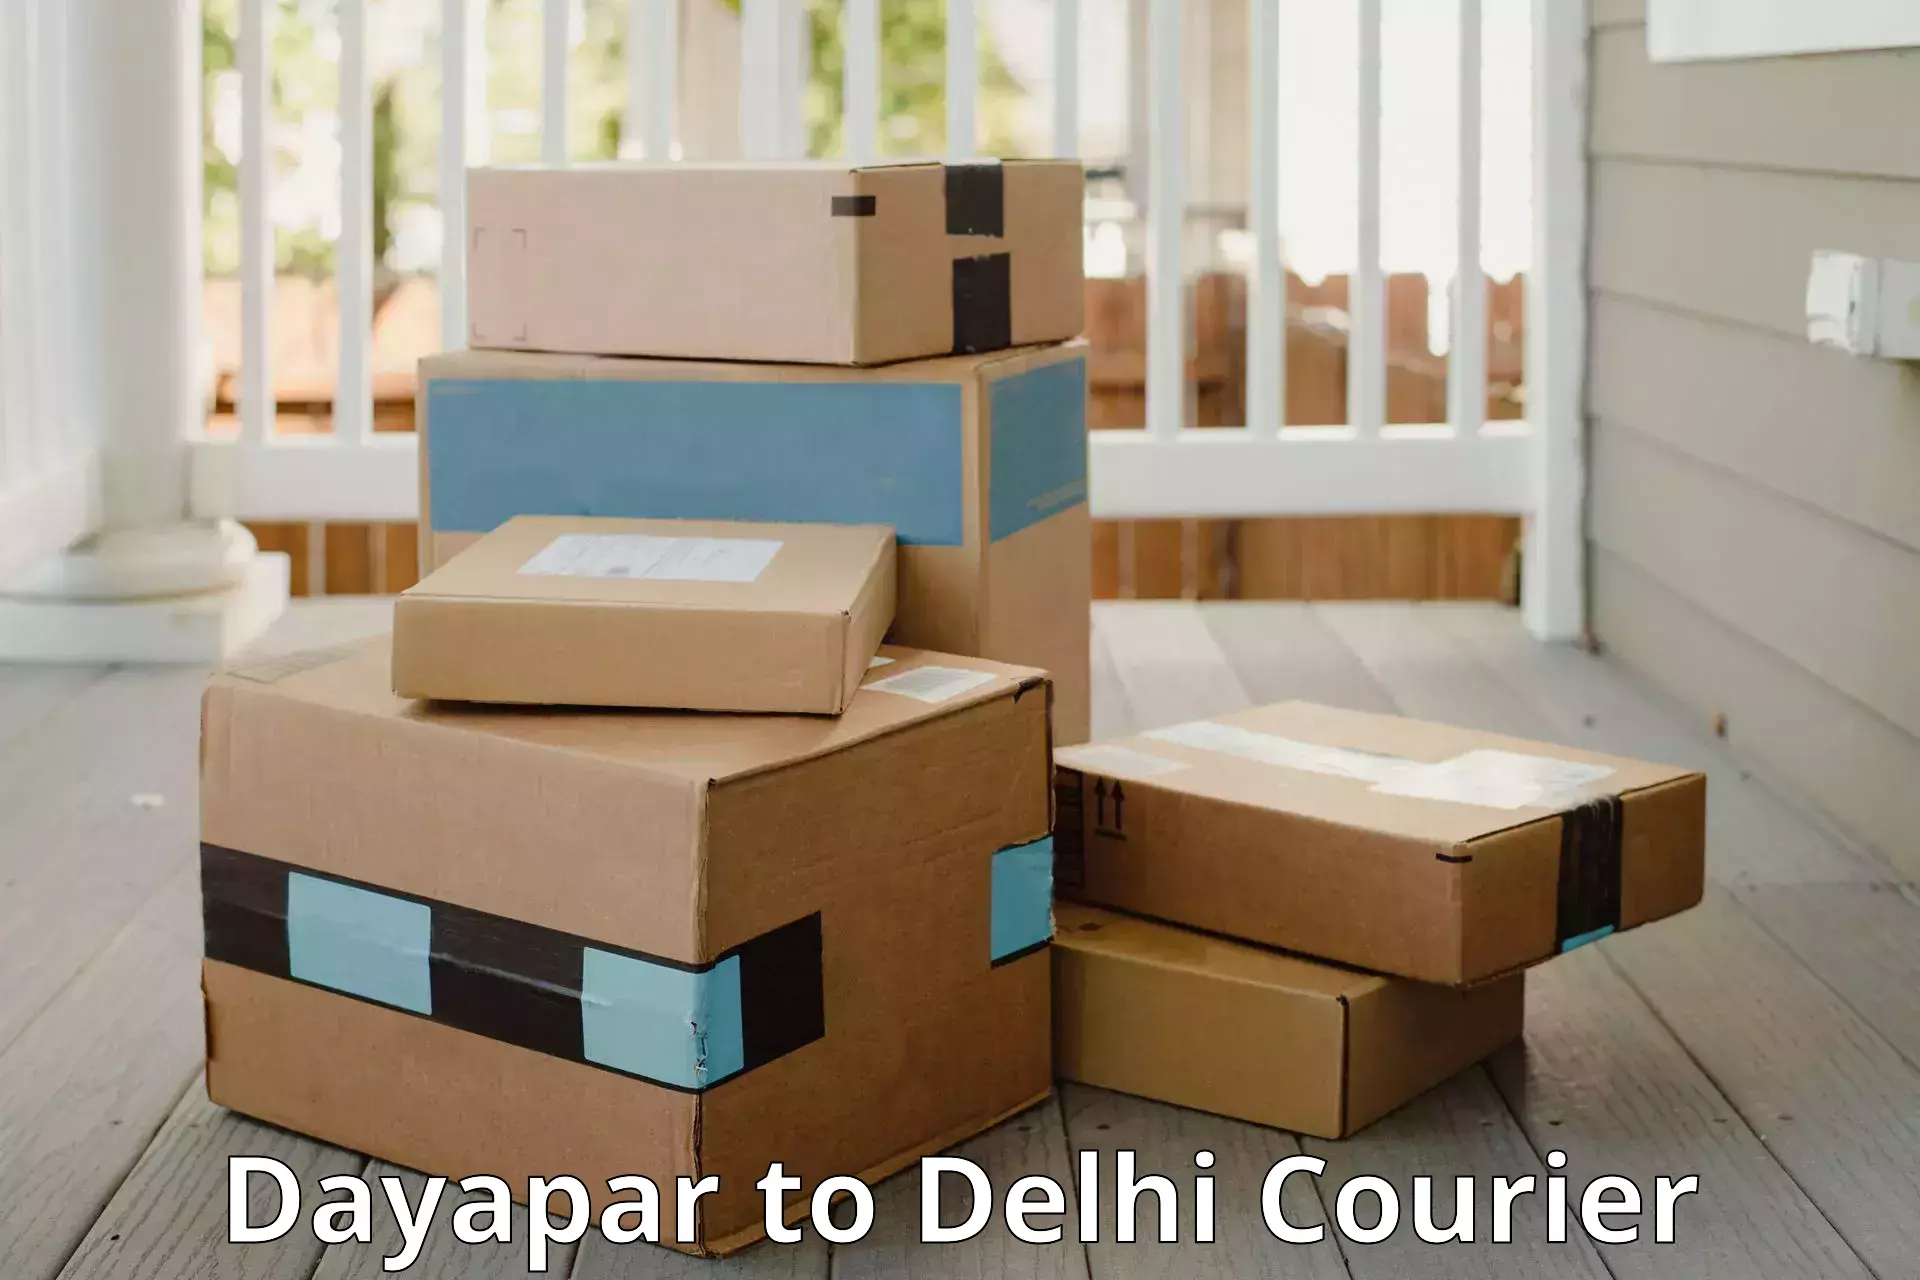 Baggage transport management Dayapar to Delhi